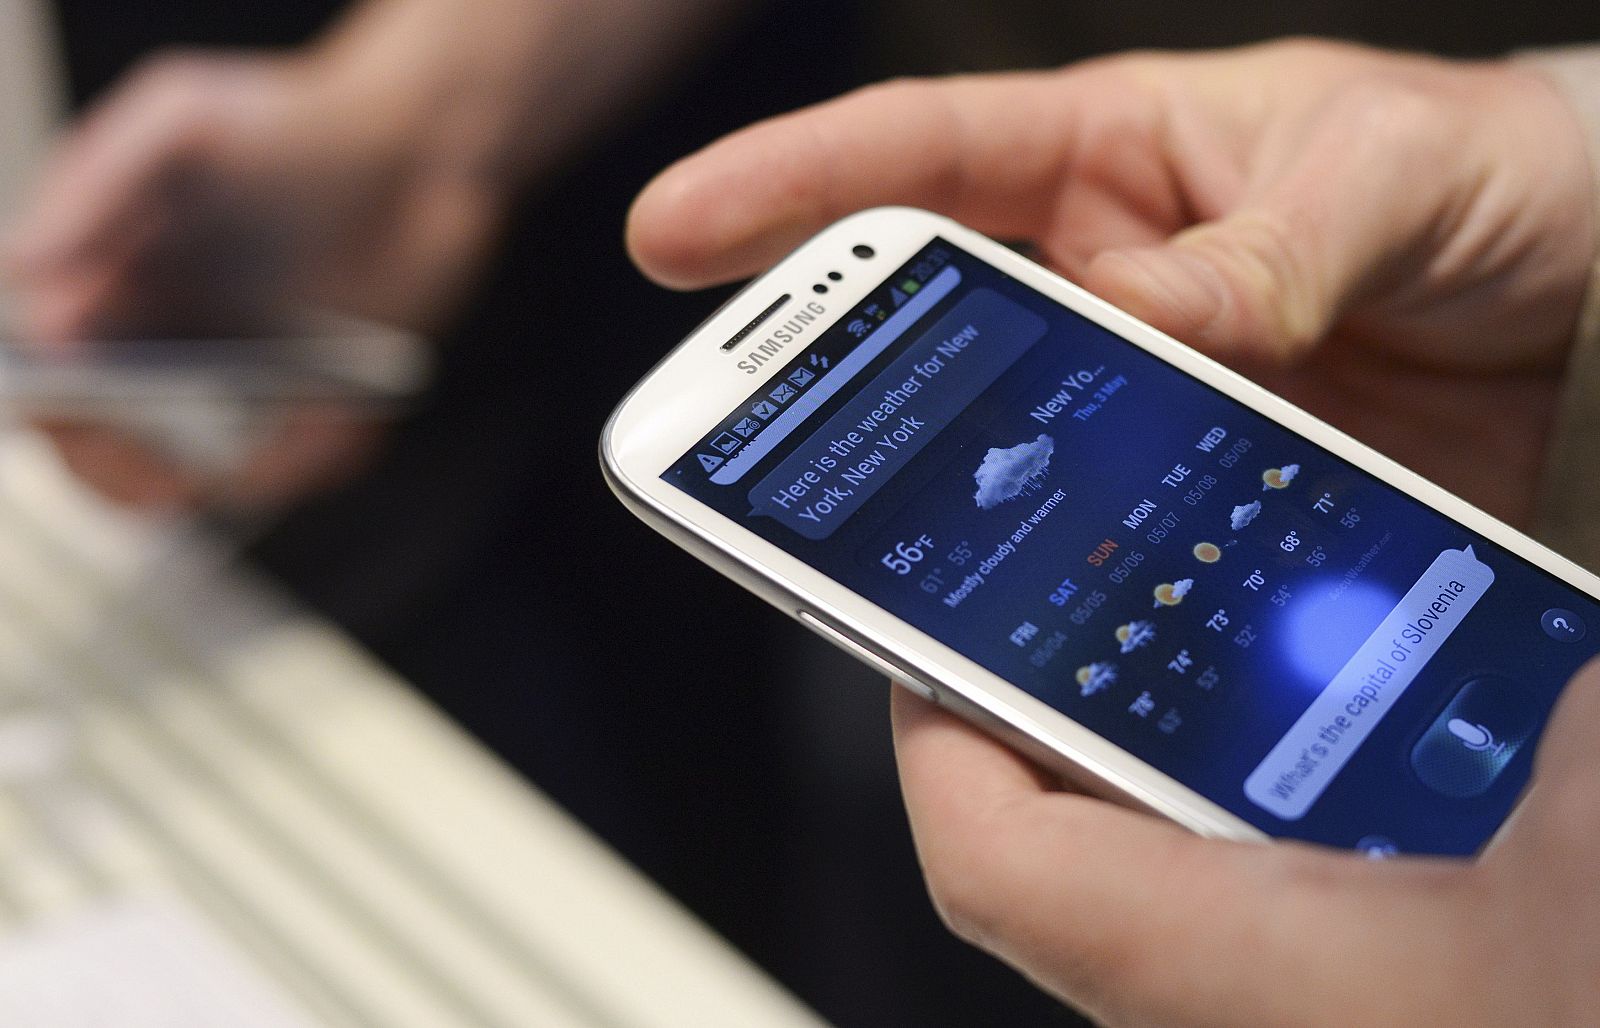 El Samsung Galaxy S III fue presentado en Londres